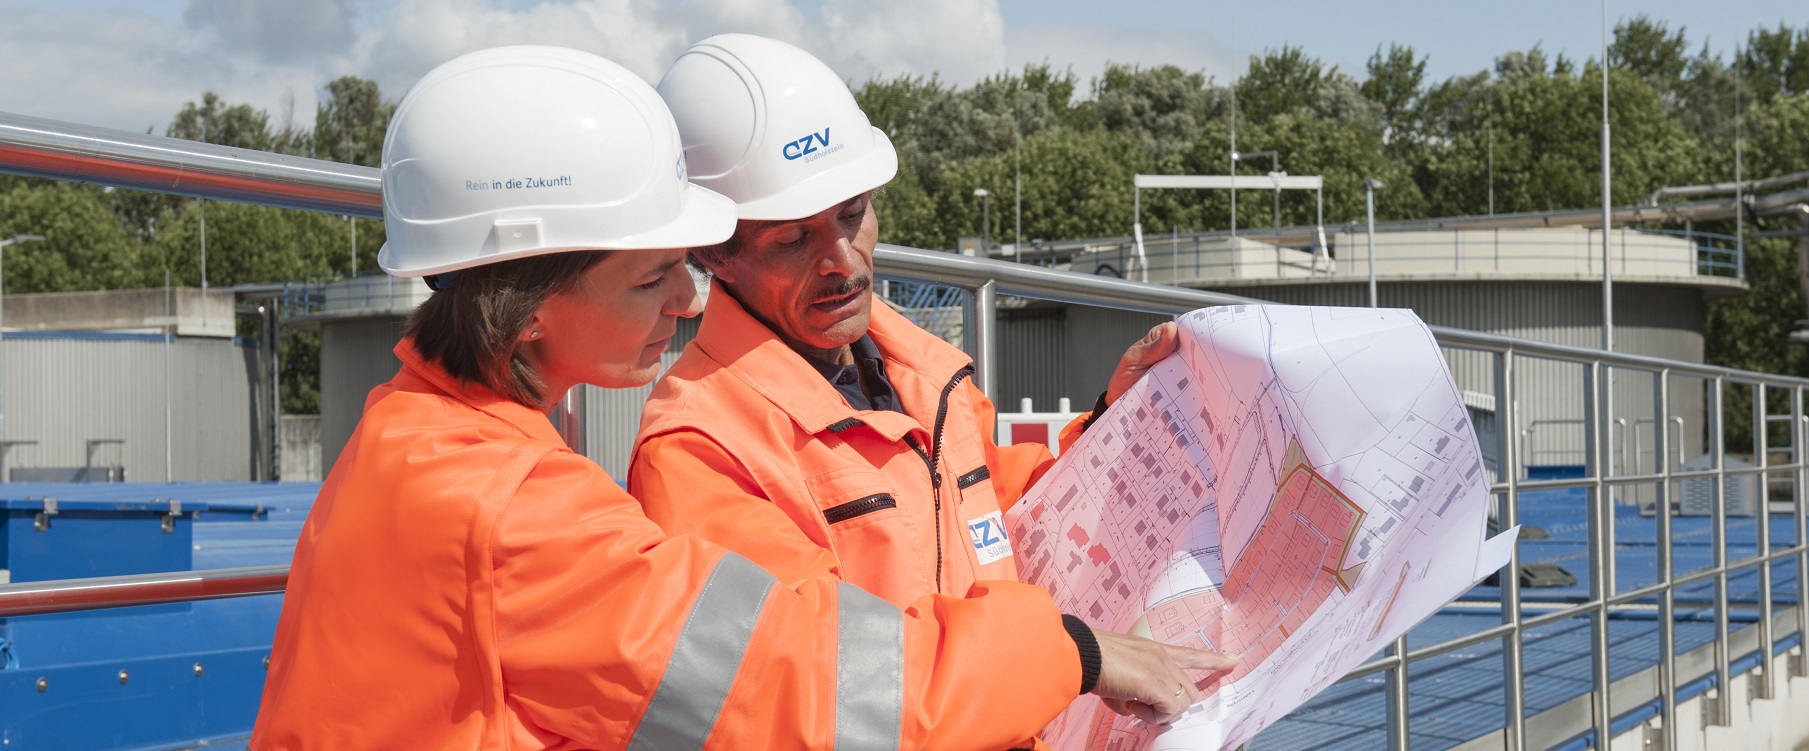 Zwei Mitarbeitende des AZV in orangenen Warnwesten schauen gemeinsam auf eine Bauzeichnung